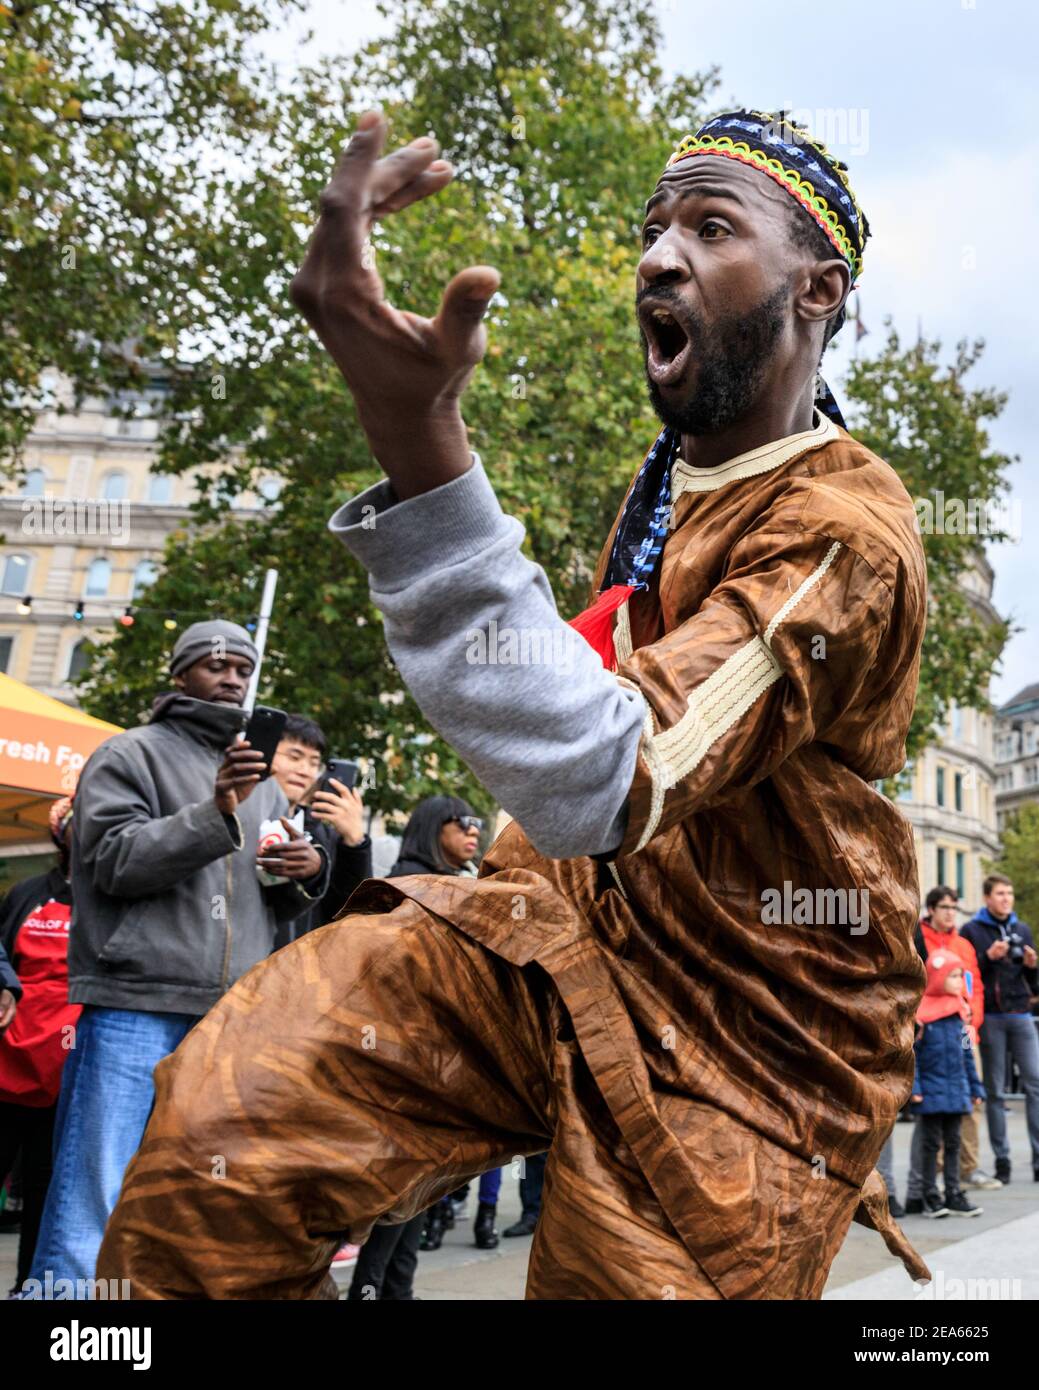 Des danseurs africains en costumes colorés se produisent à 'Africa on the Square', Trafalgar Square, Londres Banque D'Images